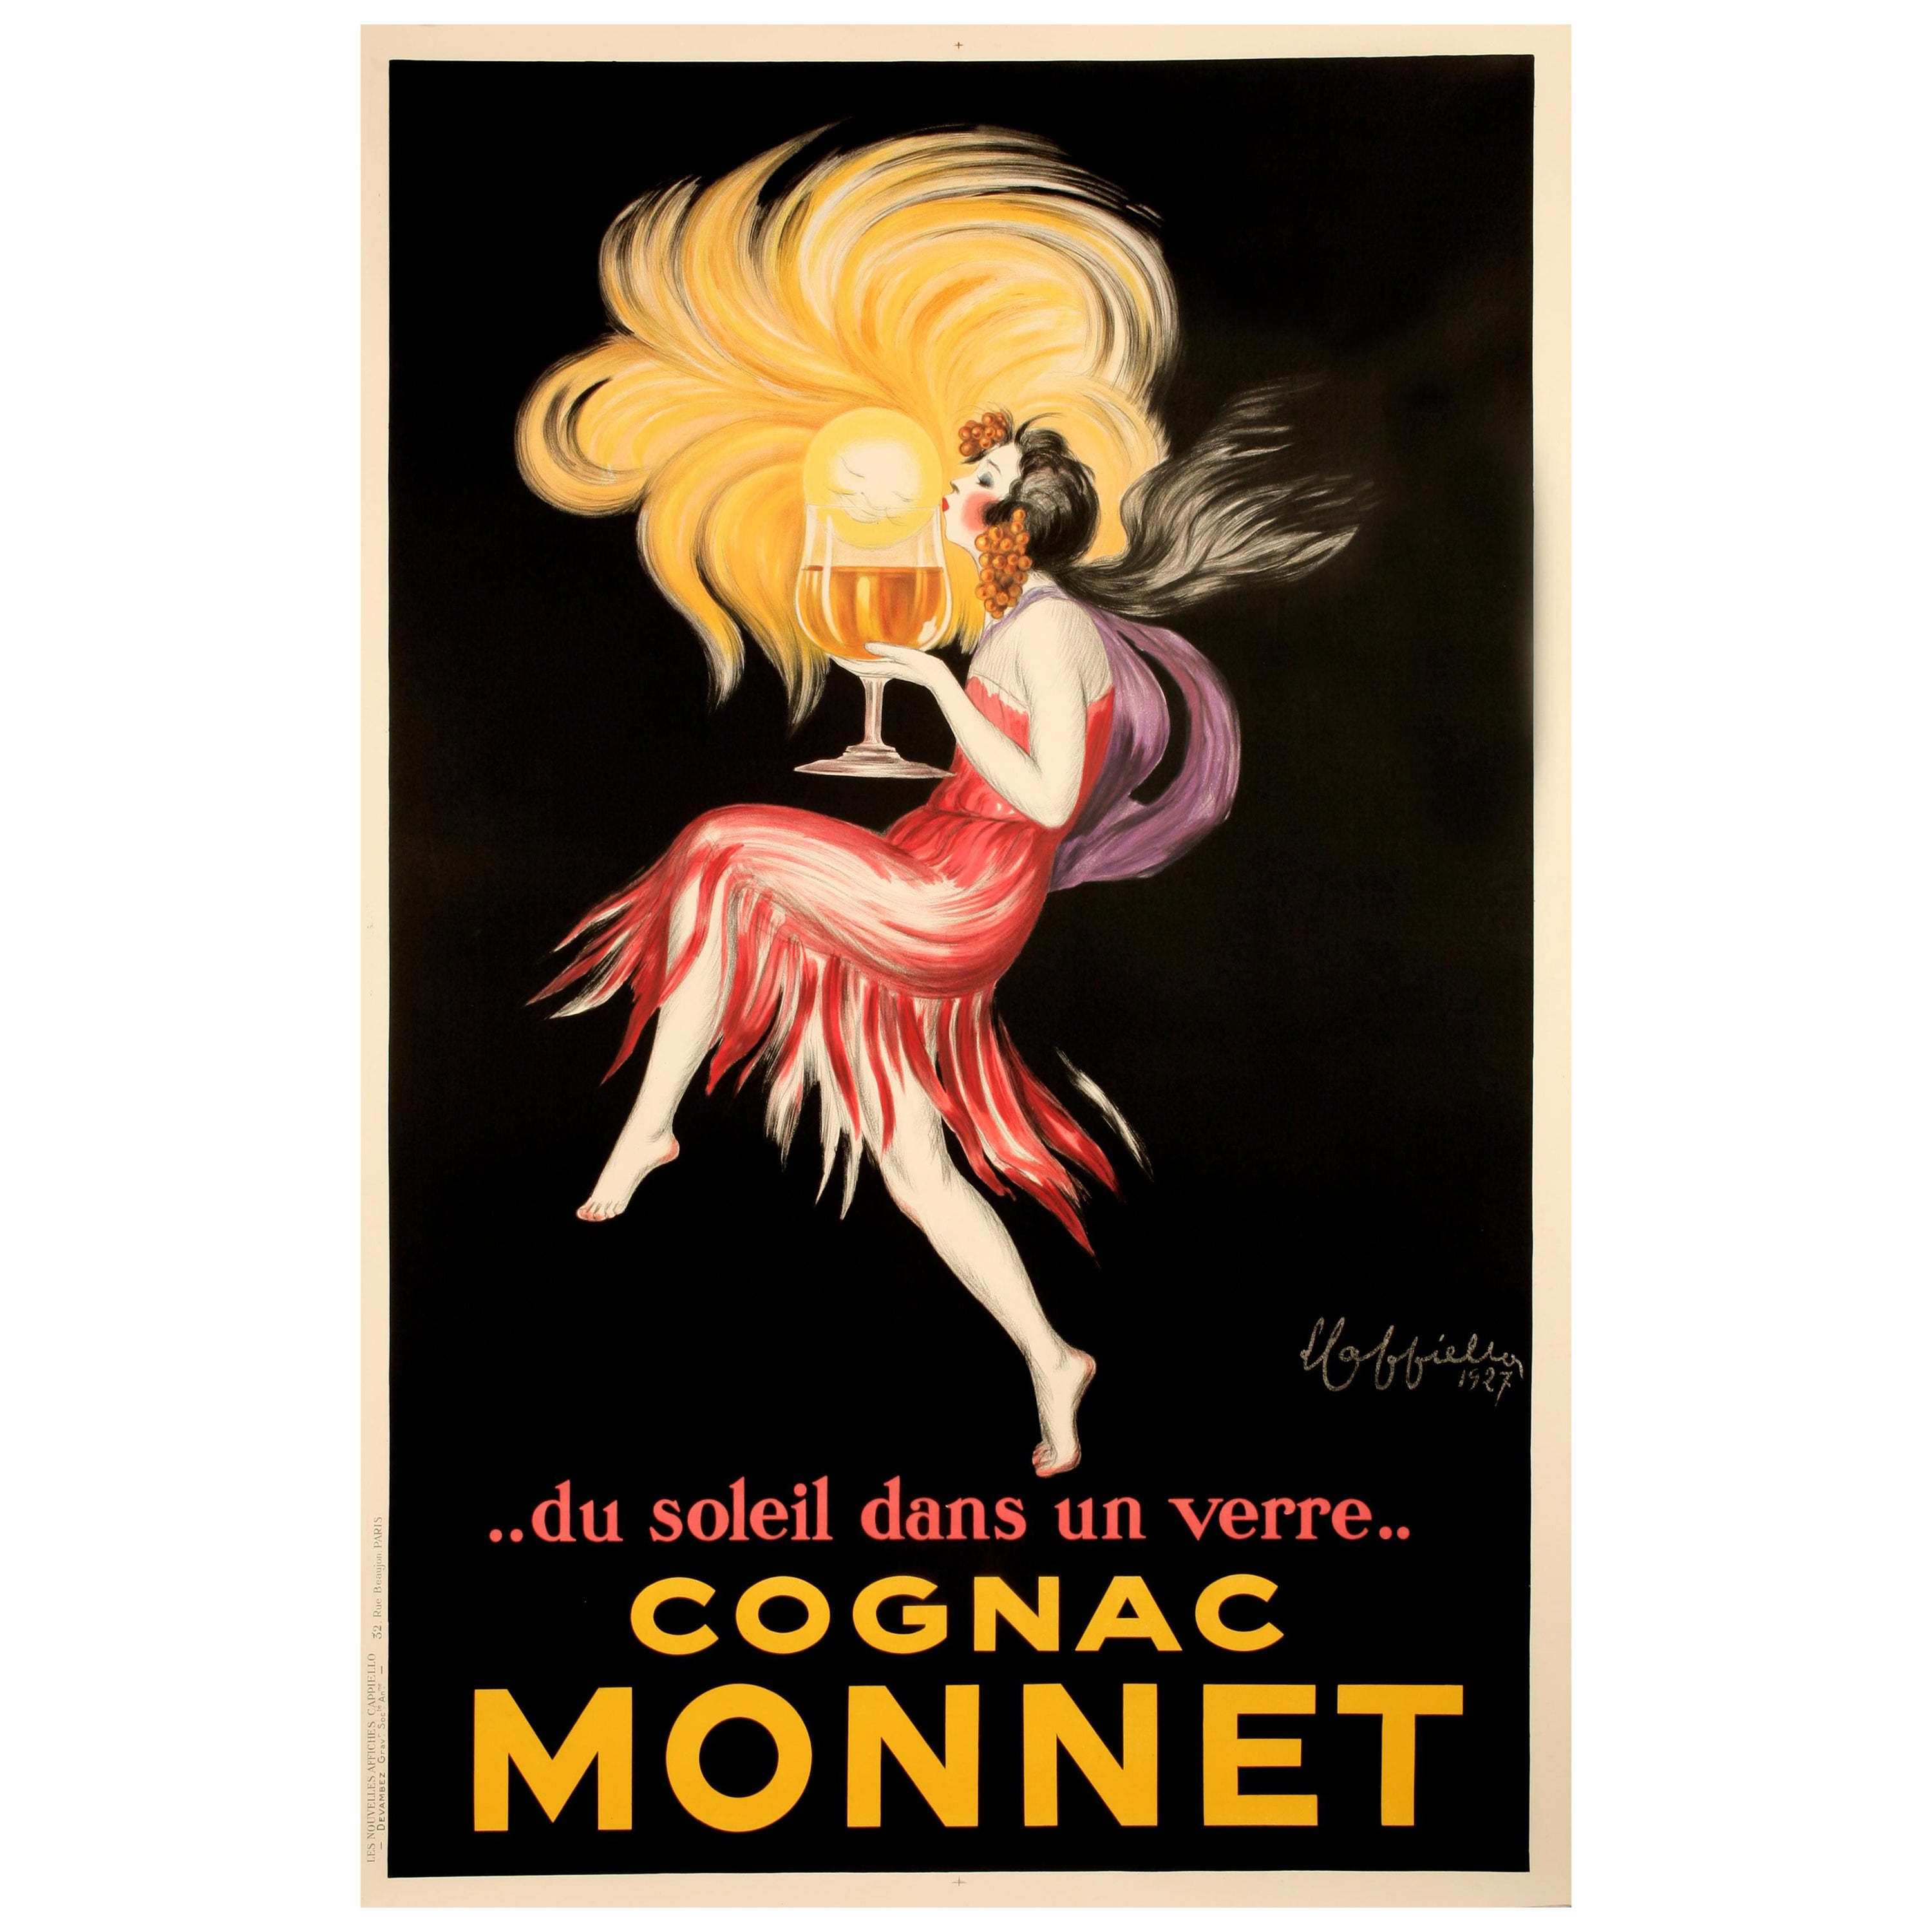 Cappiello, Affiche originale sur l'alcool, Cognac Monnet, Salamandre, Liqueur, Soleil, 1927